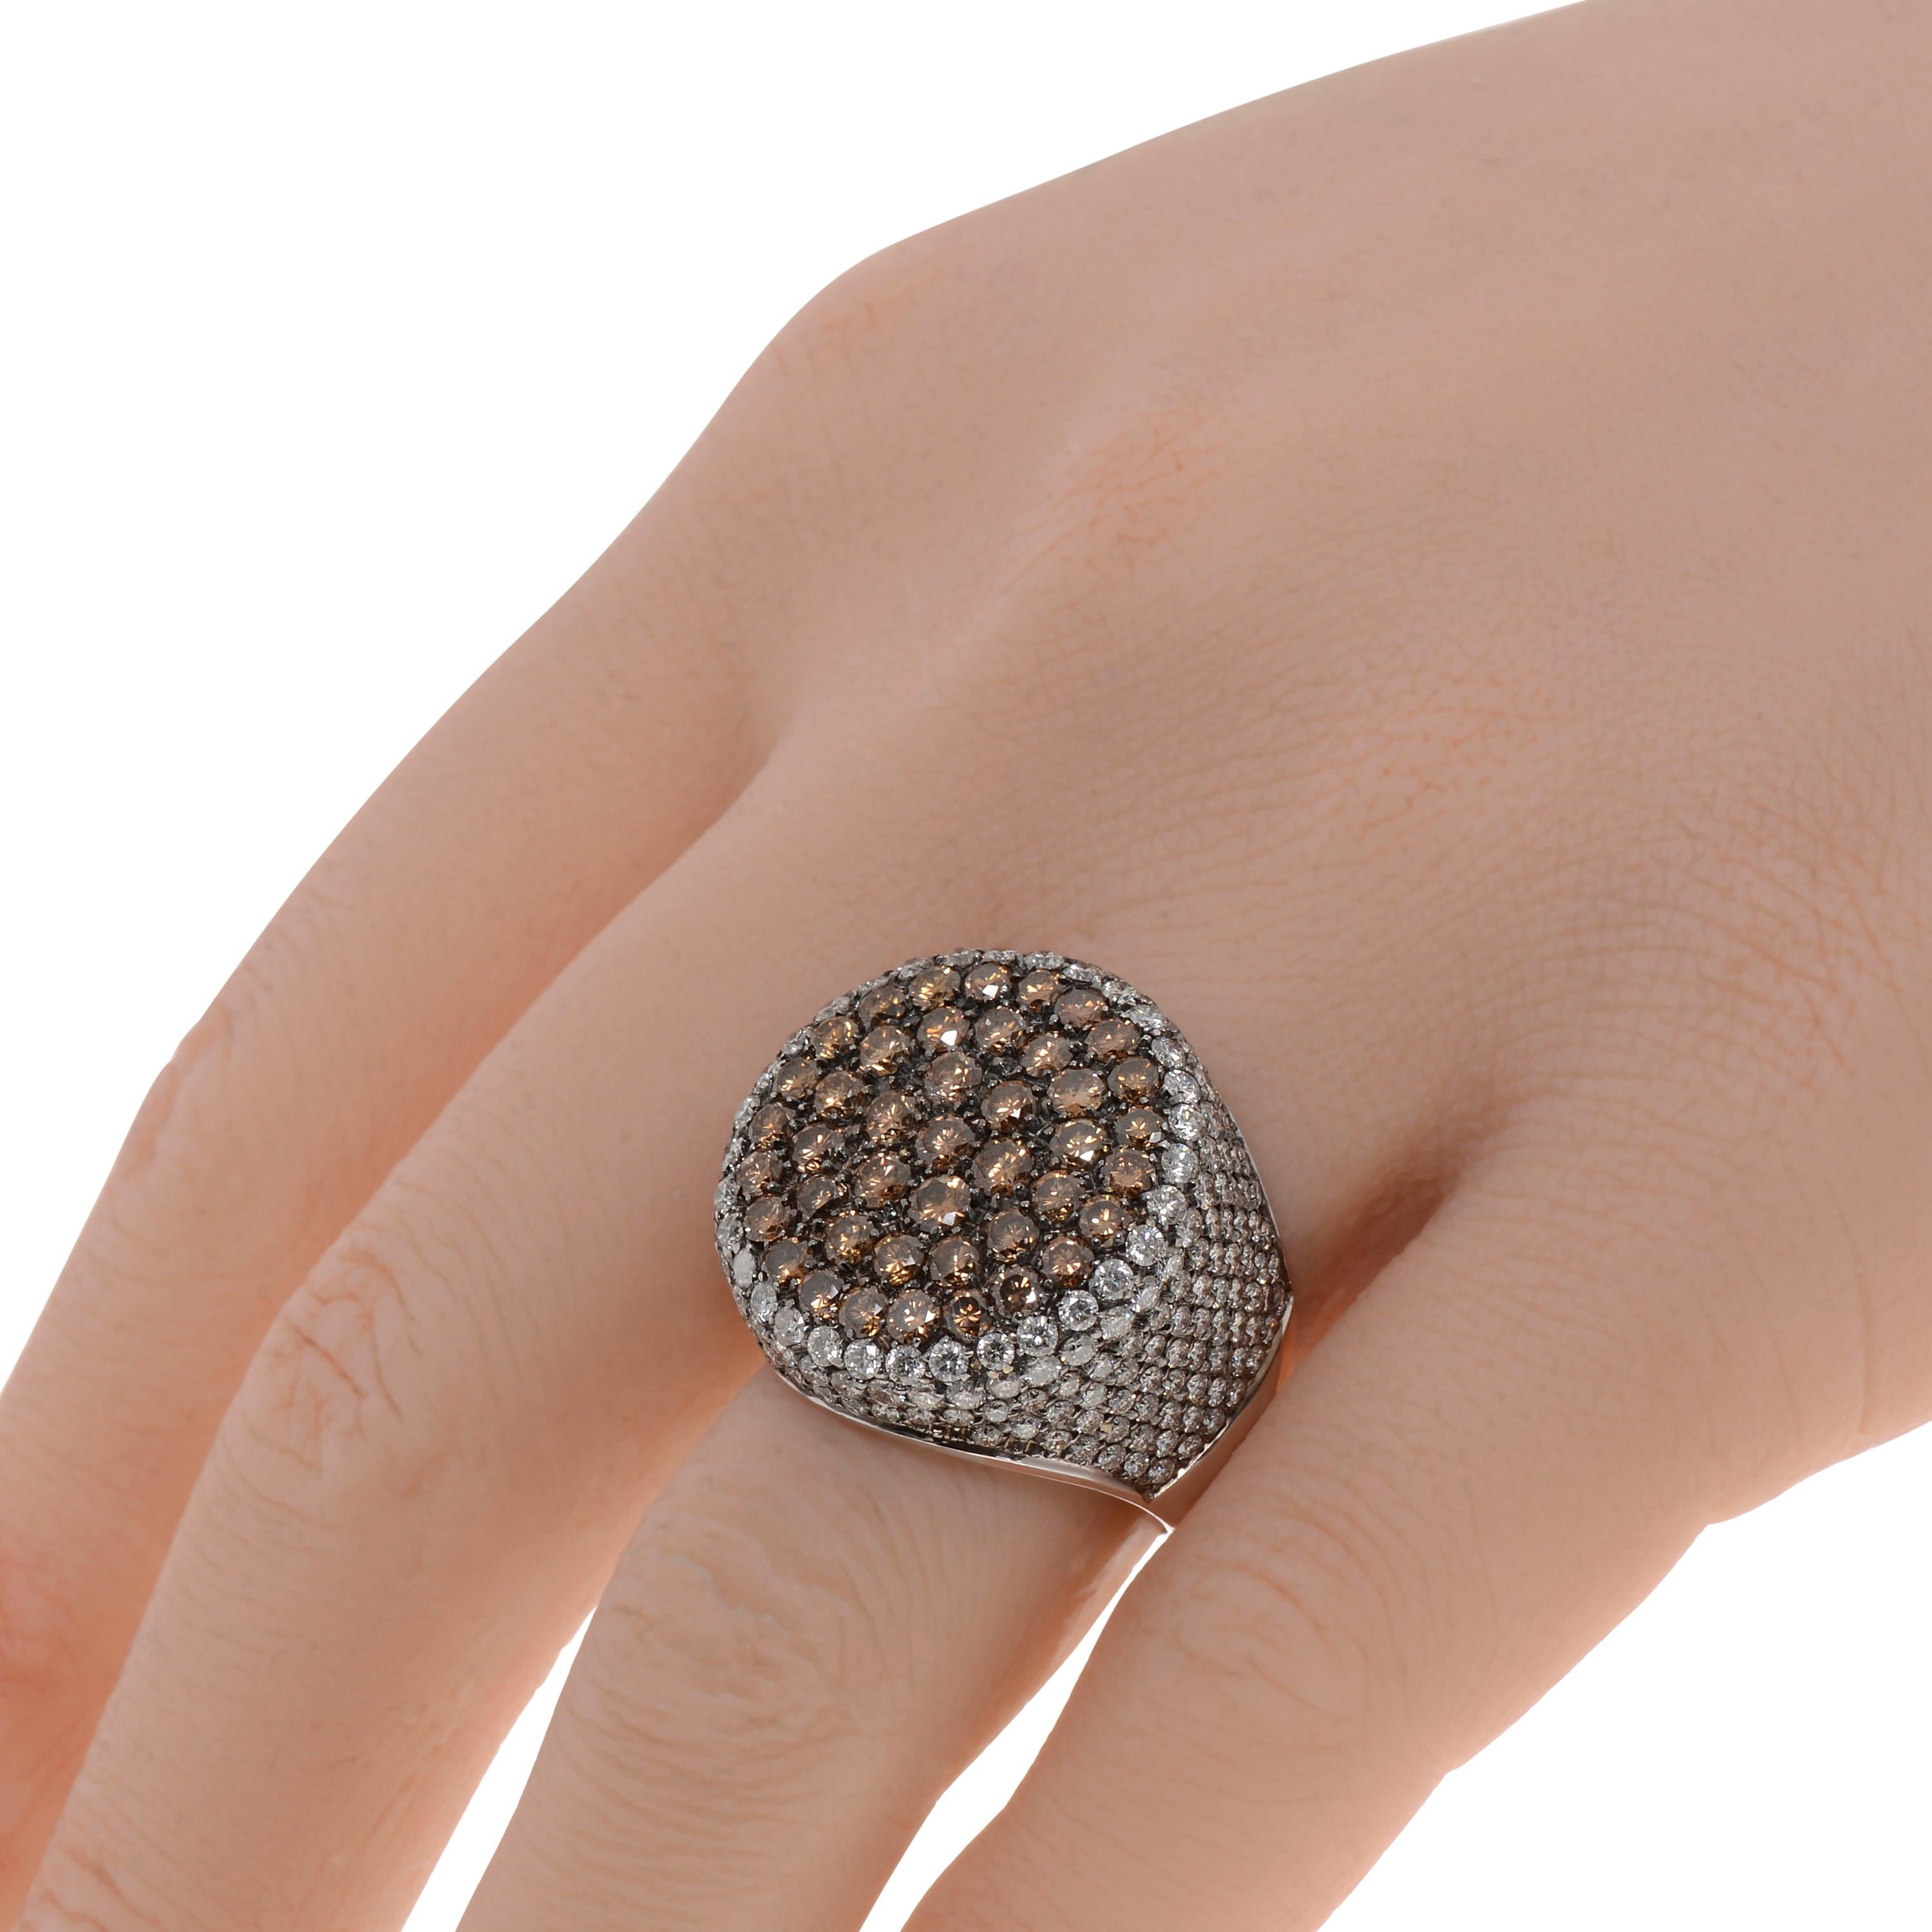 Dieser auffällige Piero Milano 18K Weißgold Statement Ring zeigt einen flachen Kreis aus braunen Diamanten, der von weißen Diamanten mit 2,96ct twd auf einem polierten Weißgoldband eingerahmt wird. Die Ringgröße ist 7,5. Die Größe der Dekoration